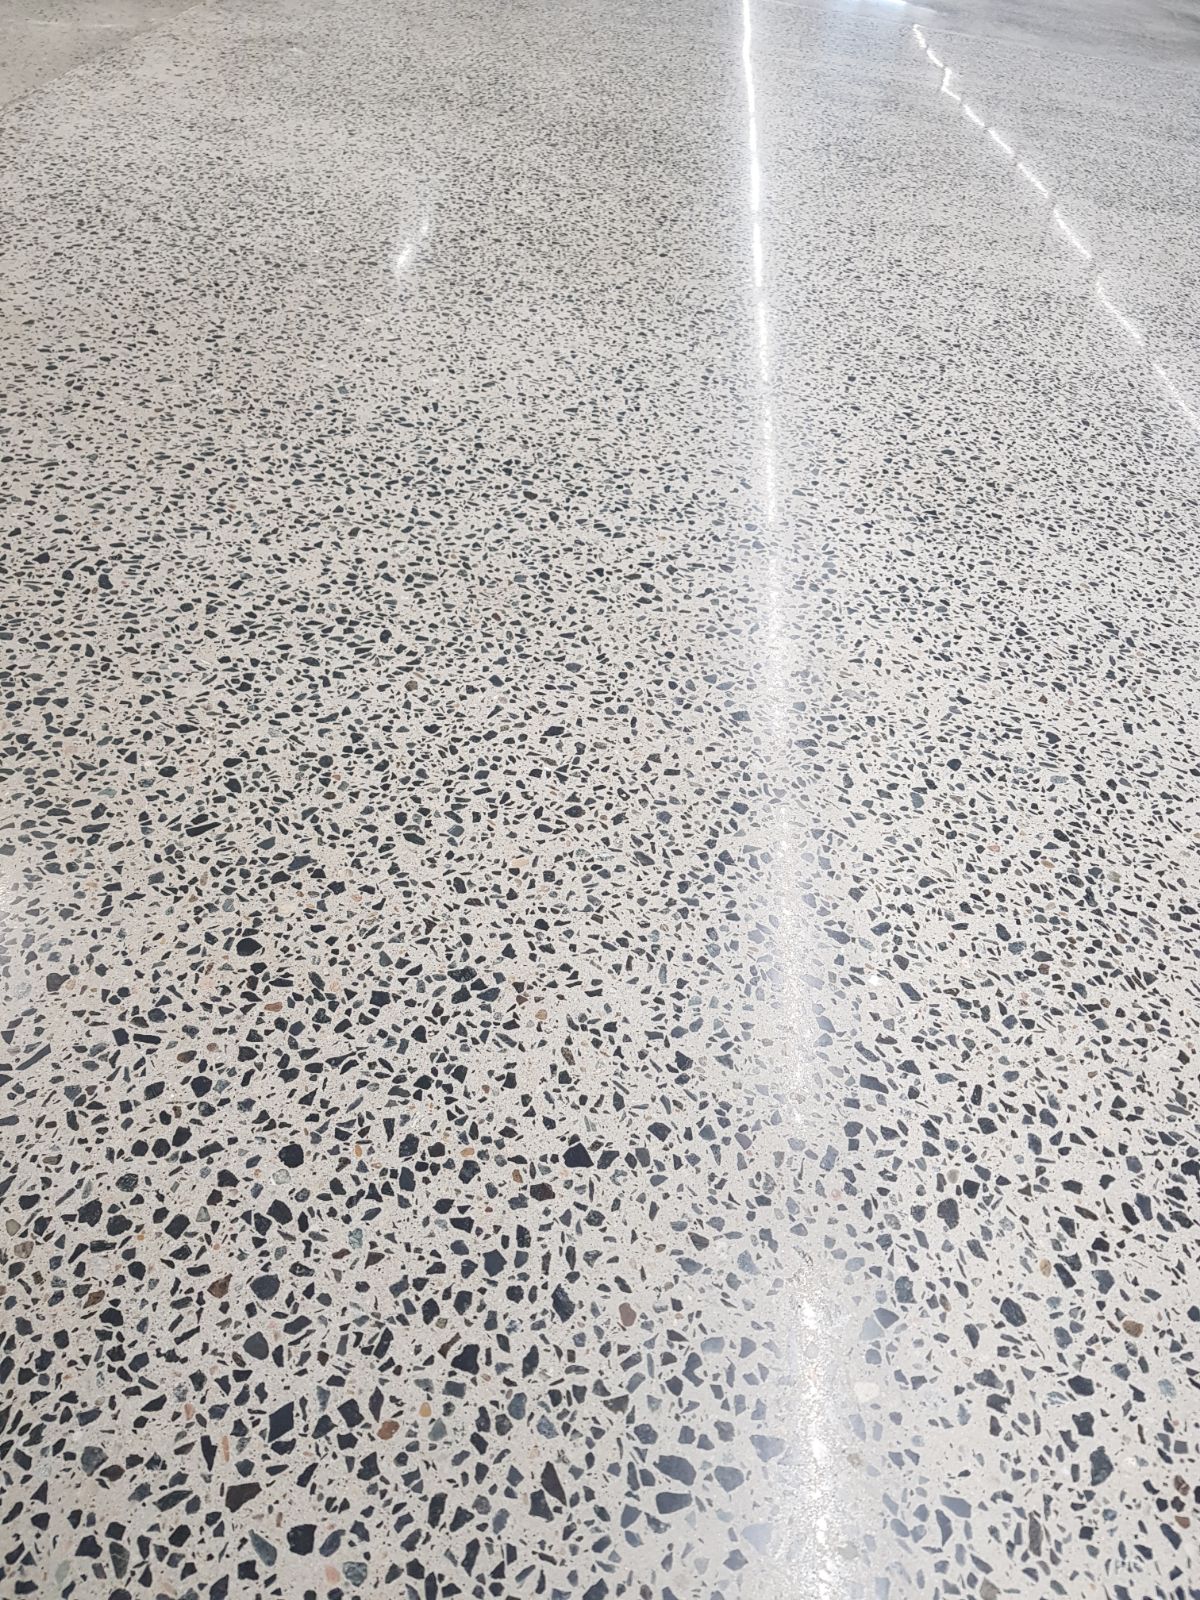 Polished Concrete for Spar Hypermarket at Tawar Mall